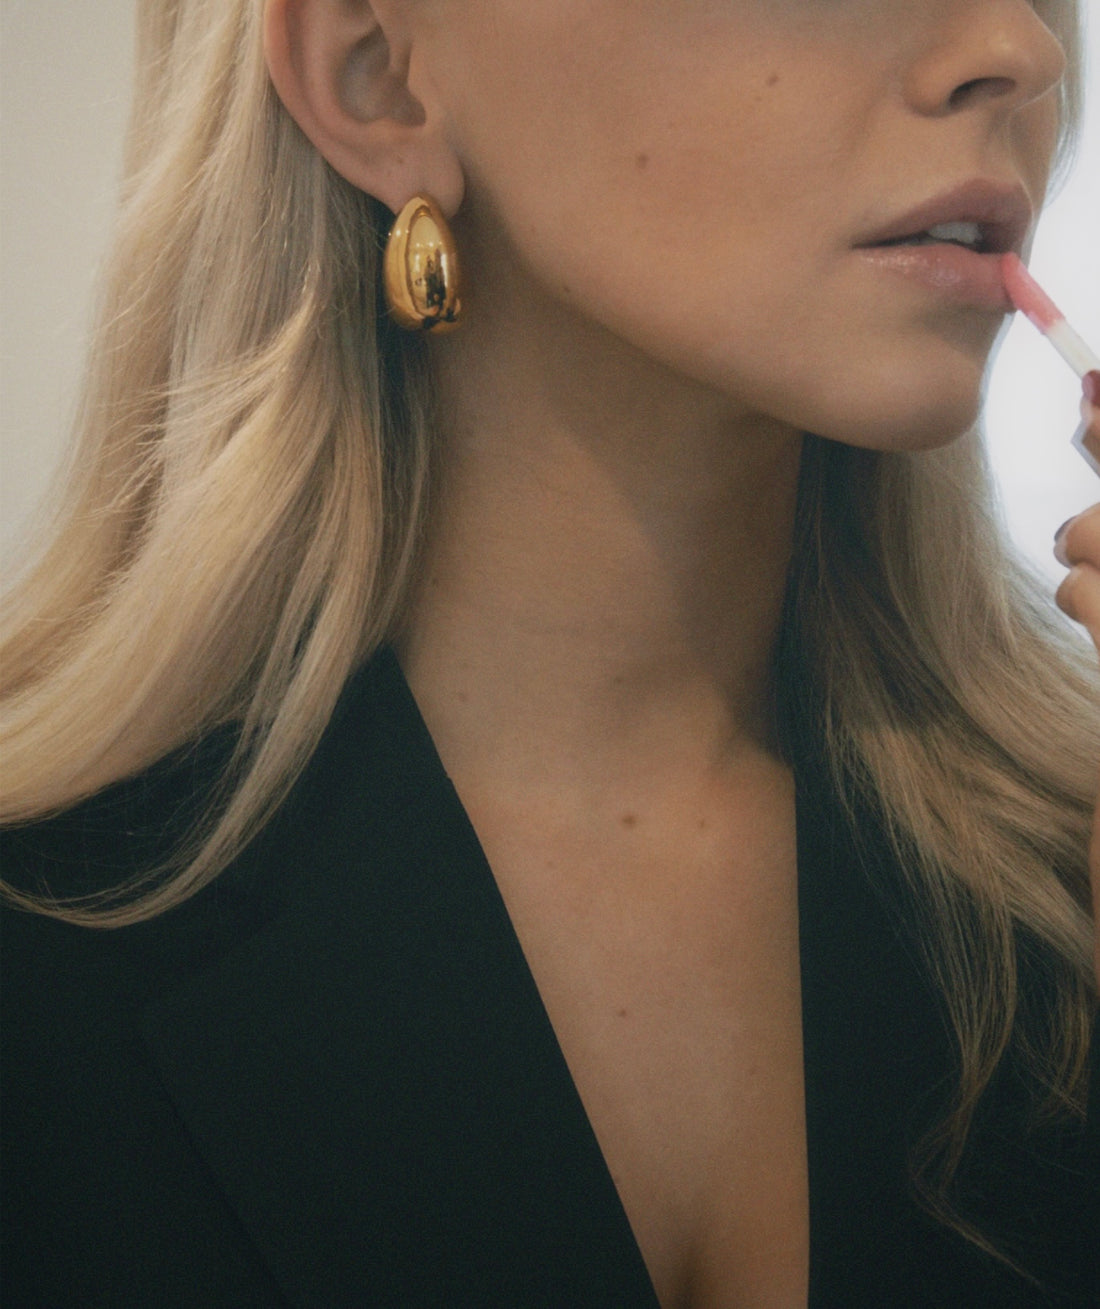 The Lola Earrings